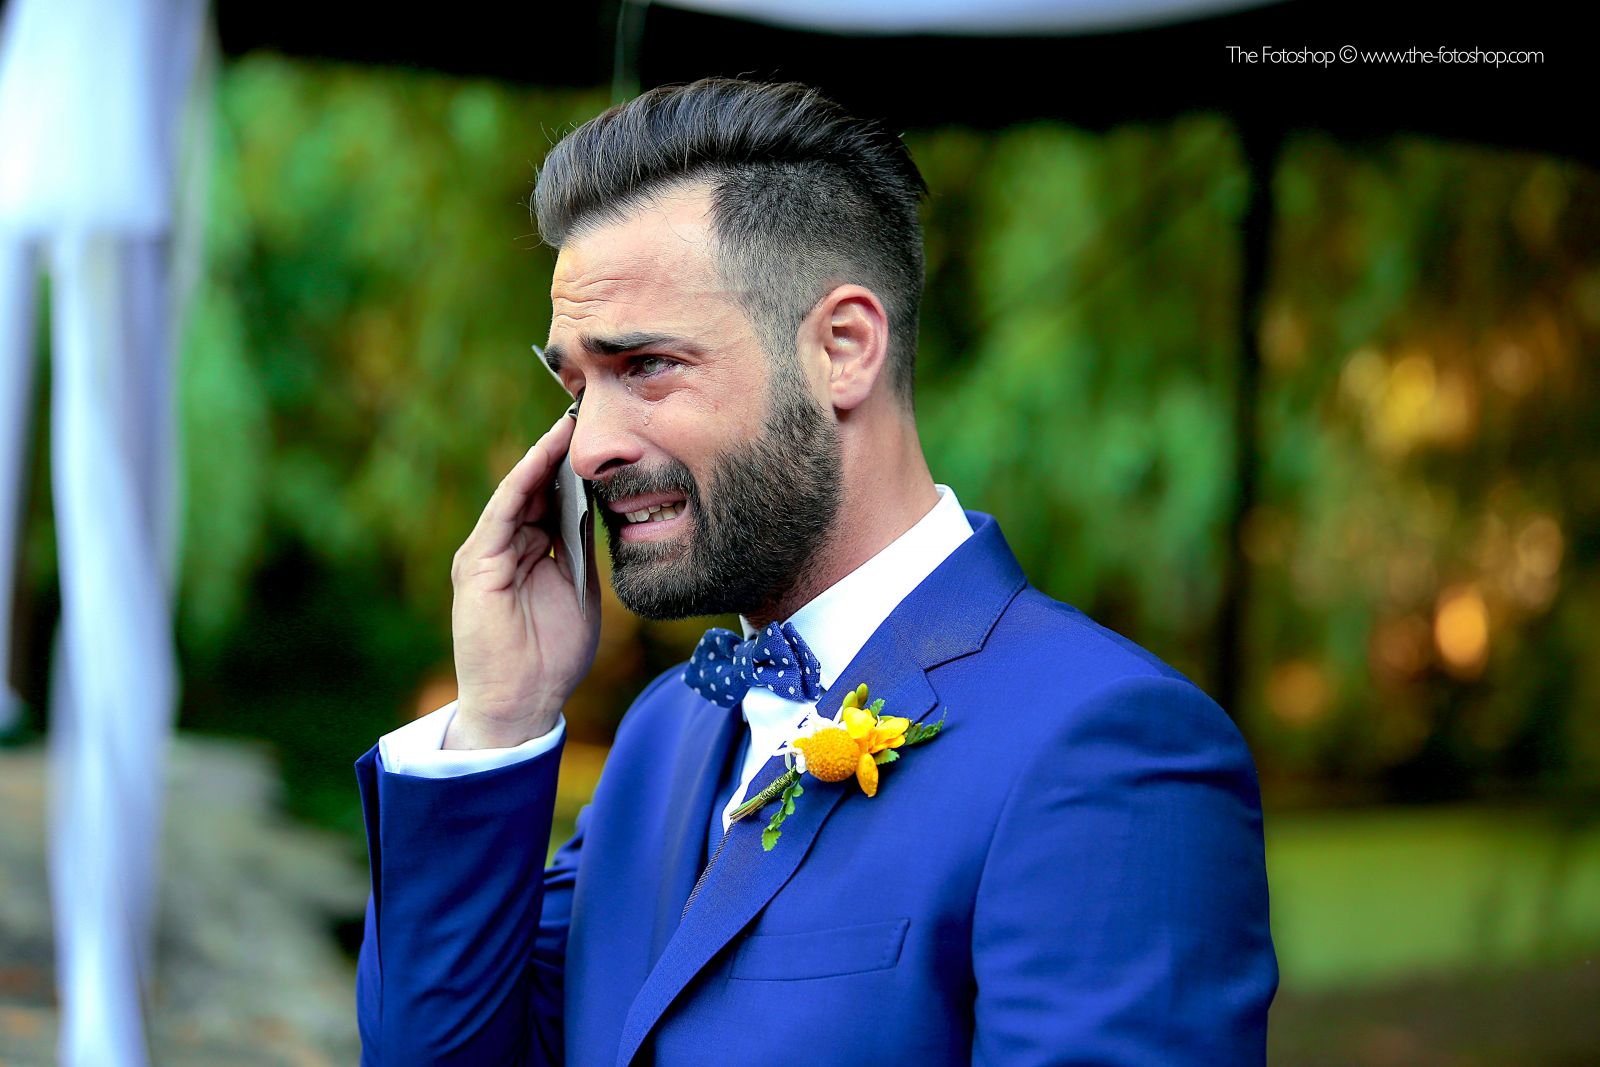 Fotografía de boda, el novio llorando, emoción